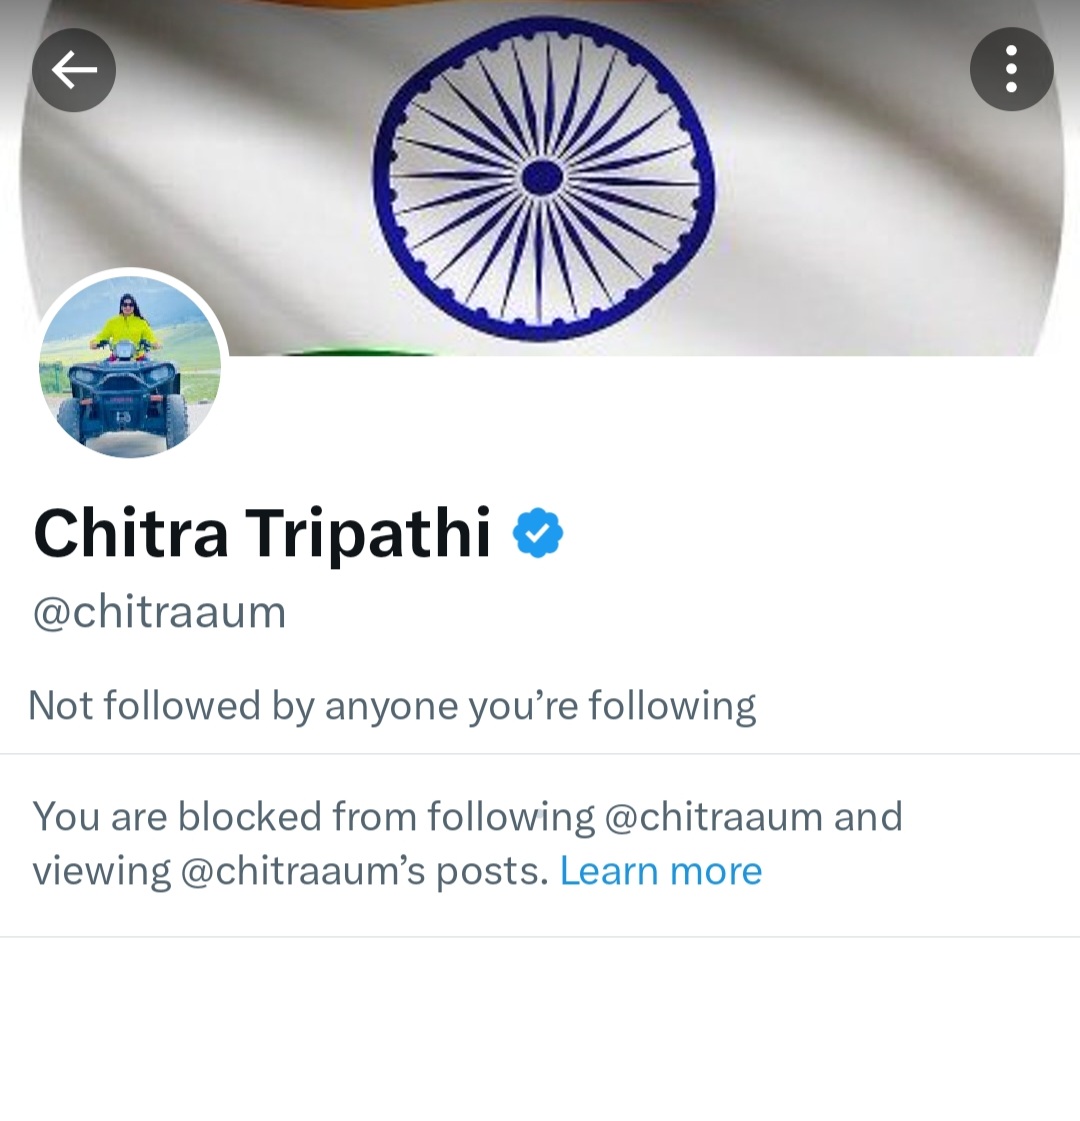 भाजपा प्रवक्ता कह दो तो .. ये गोदी मीडिया वाले बुरा क्यों मान जाते हैं!

#ChitraTripathi